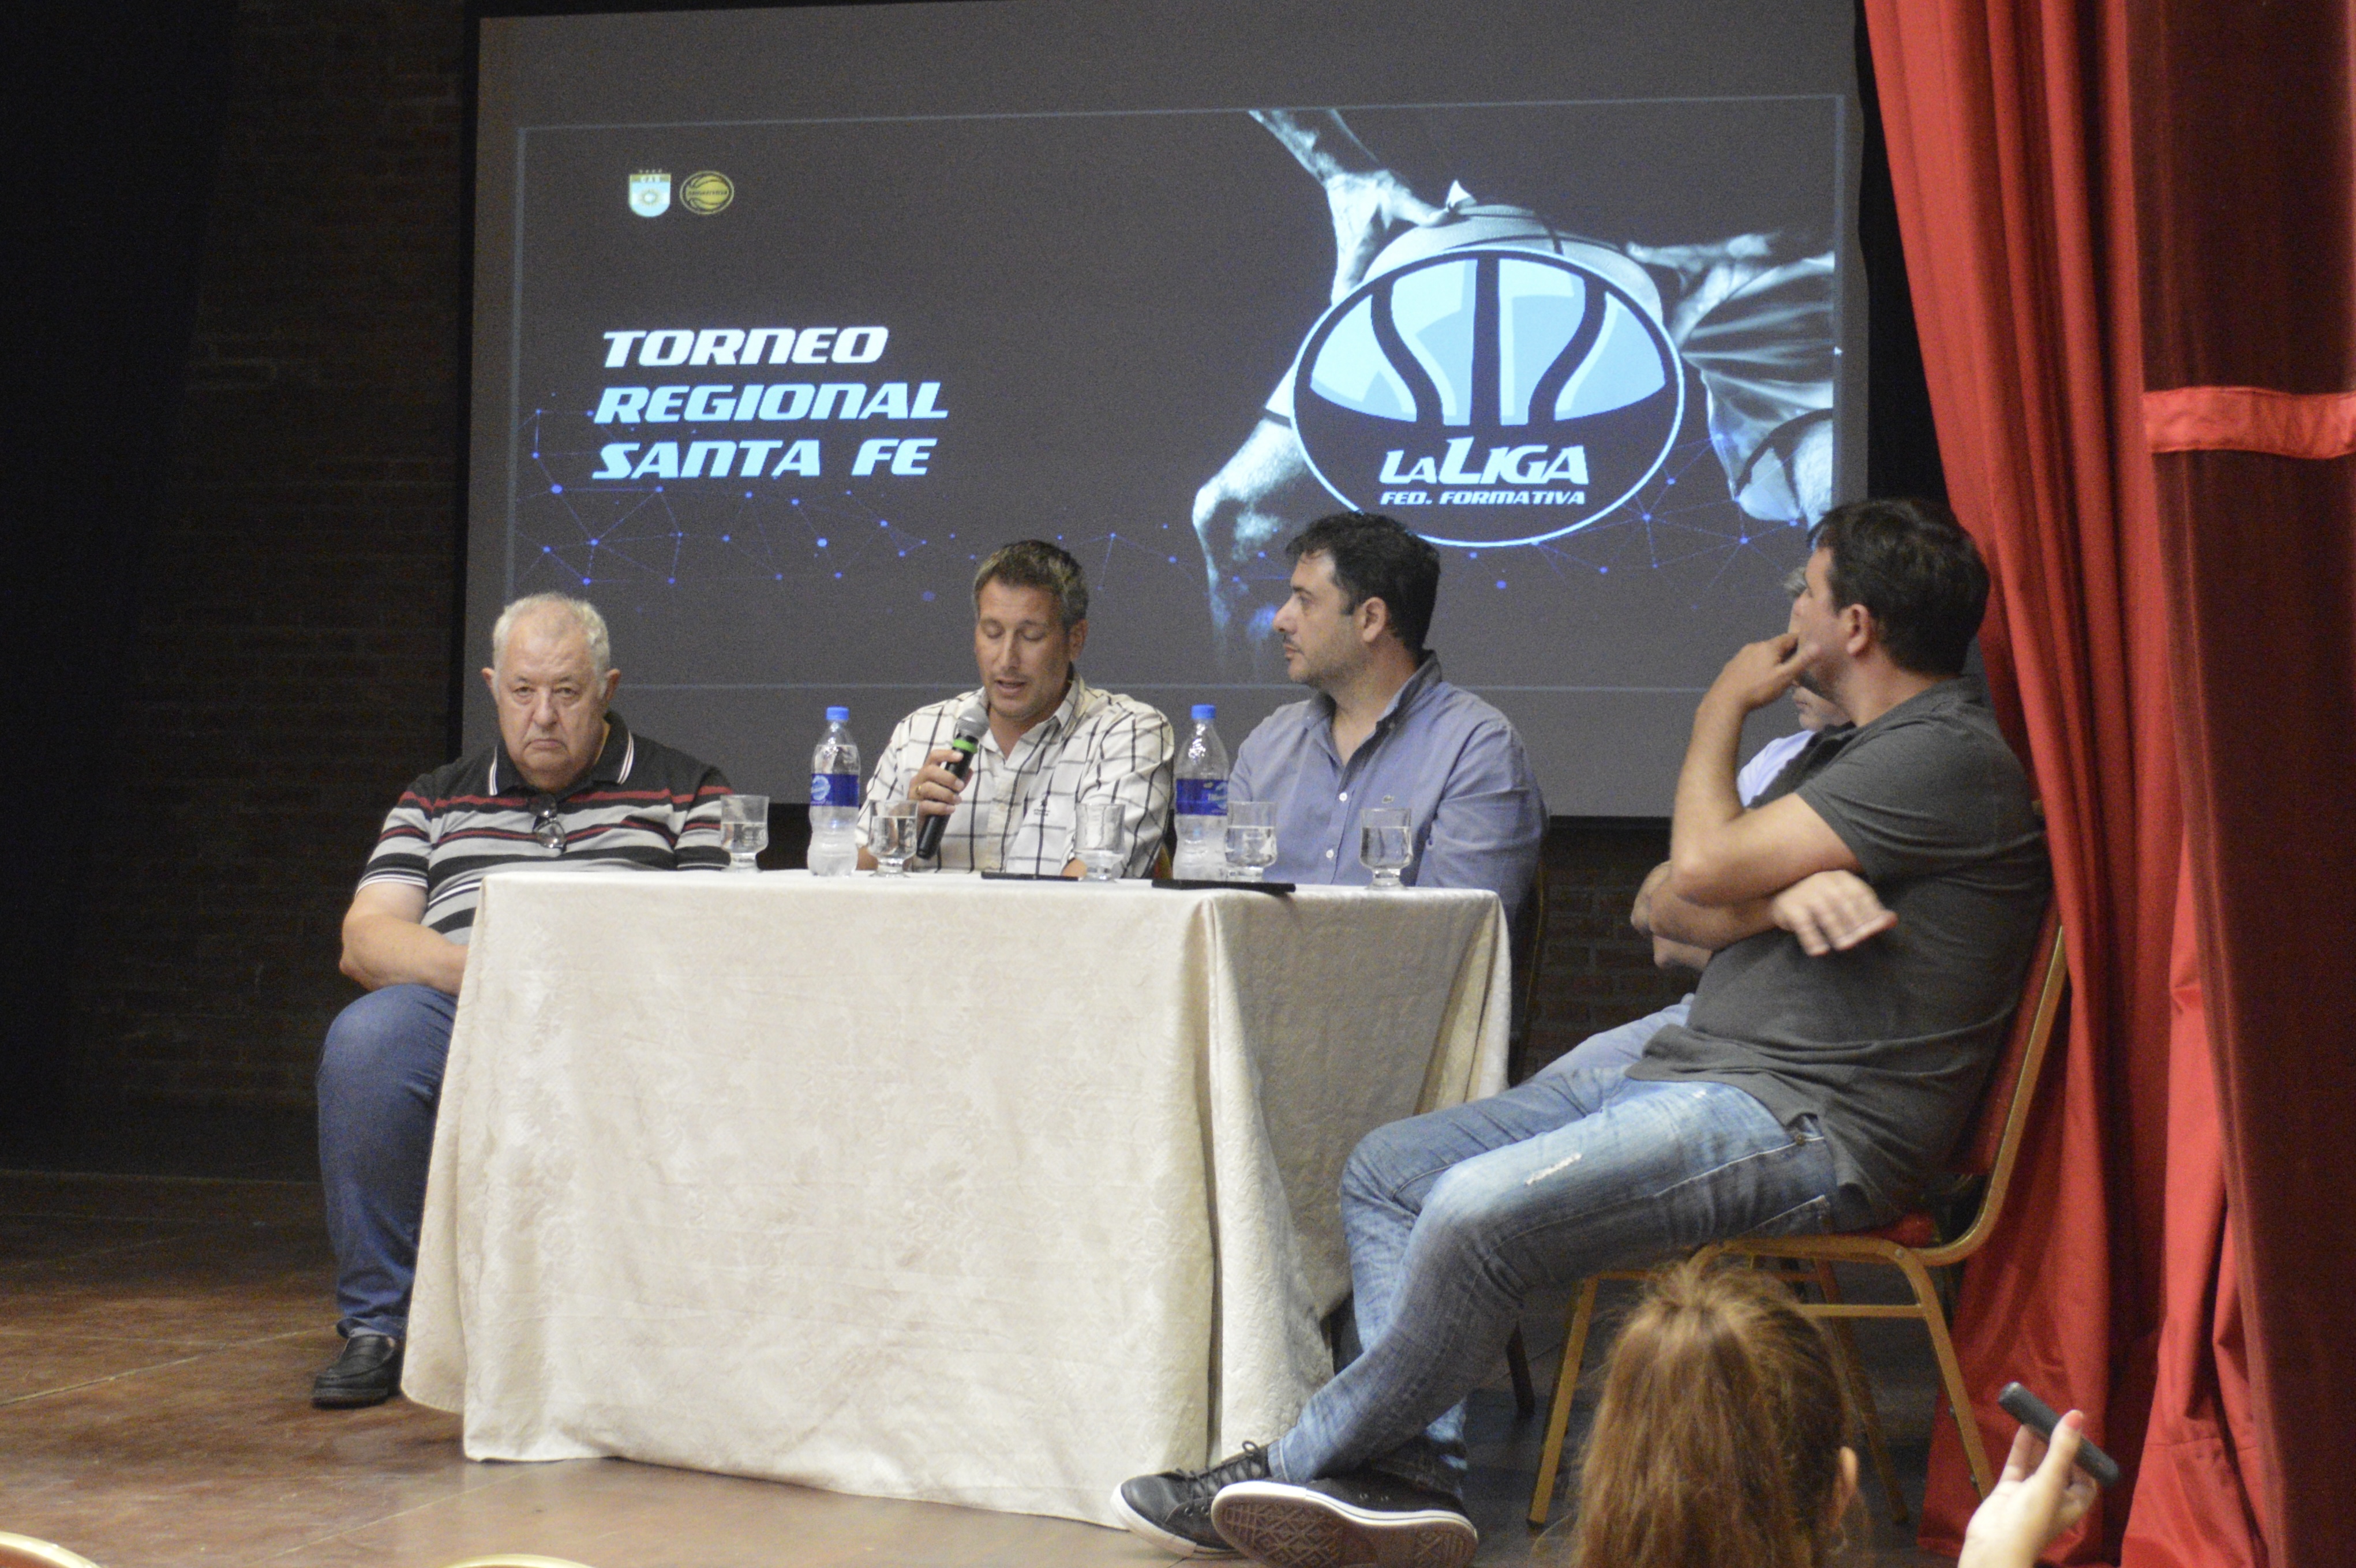 Torneos Regionales de Santa Fe: Se realizó la presentación oficial en Cañada de Gómez